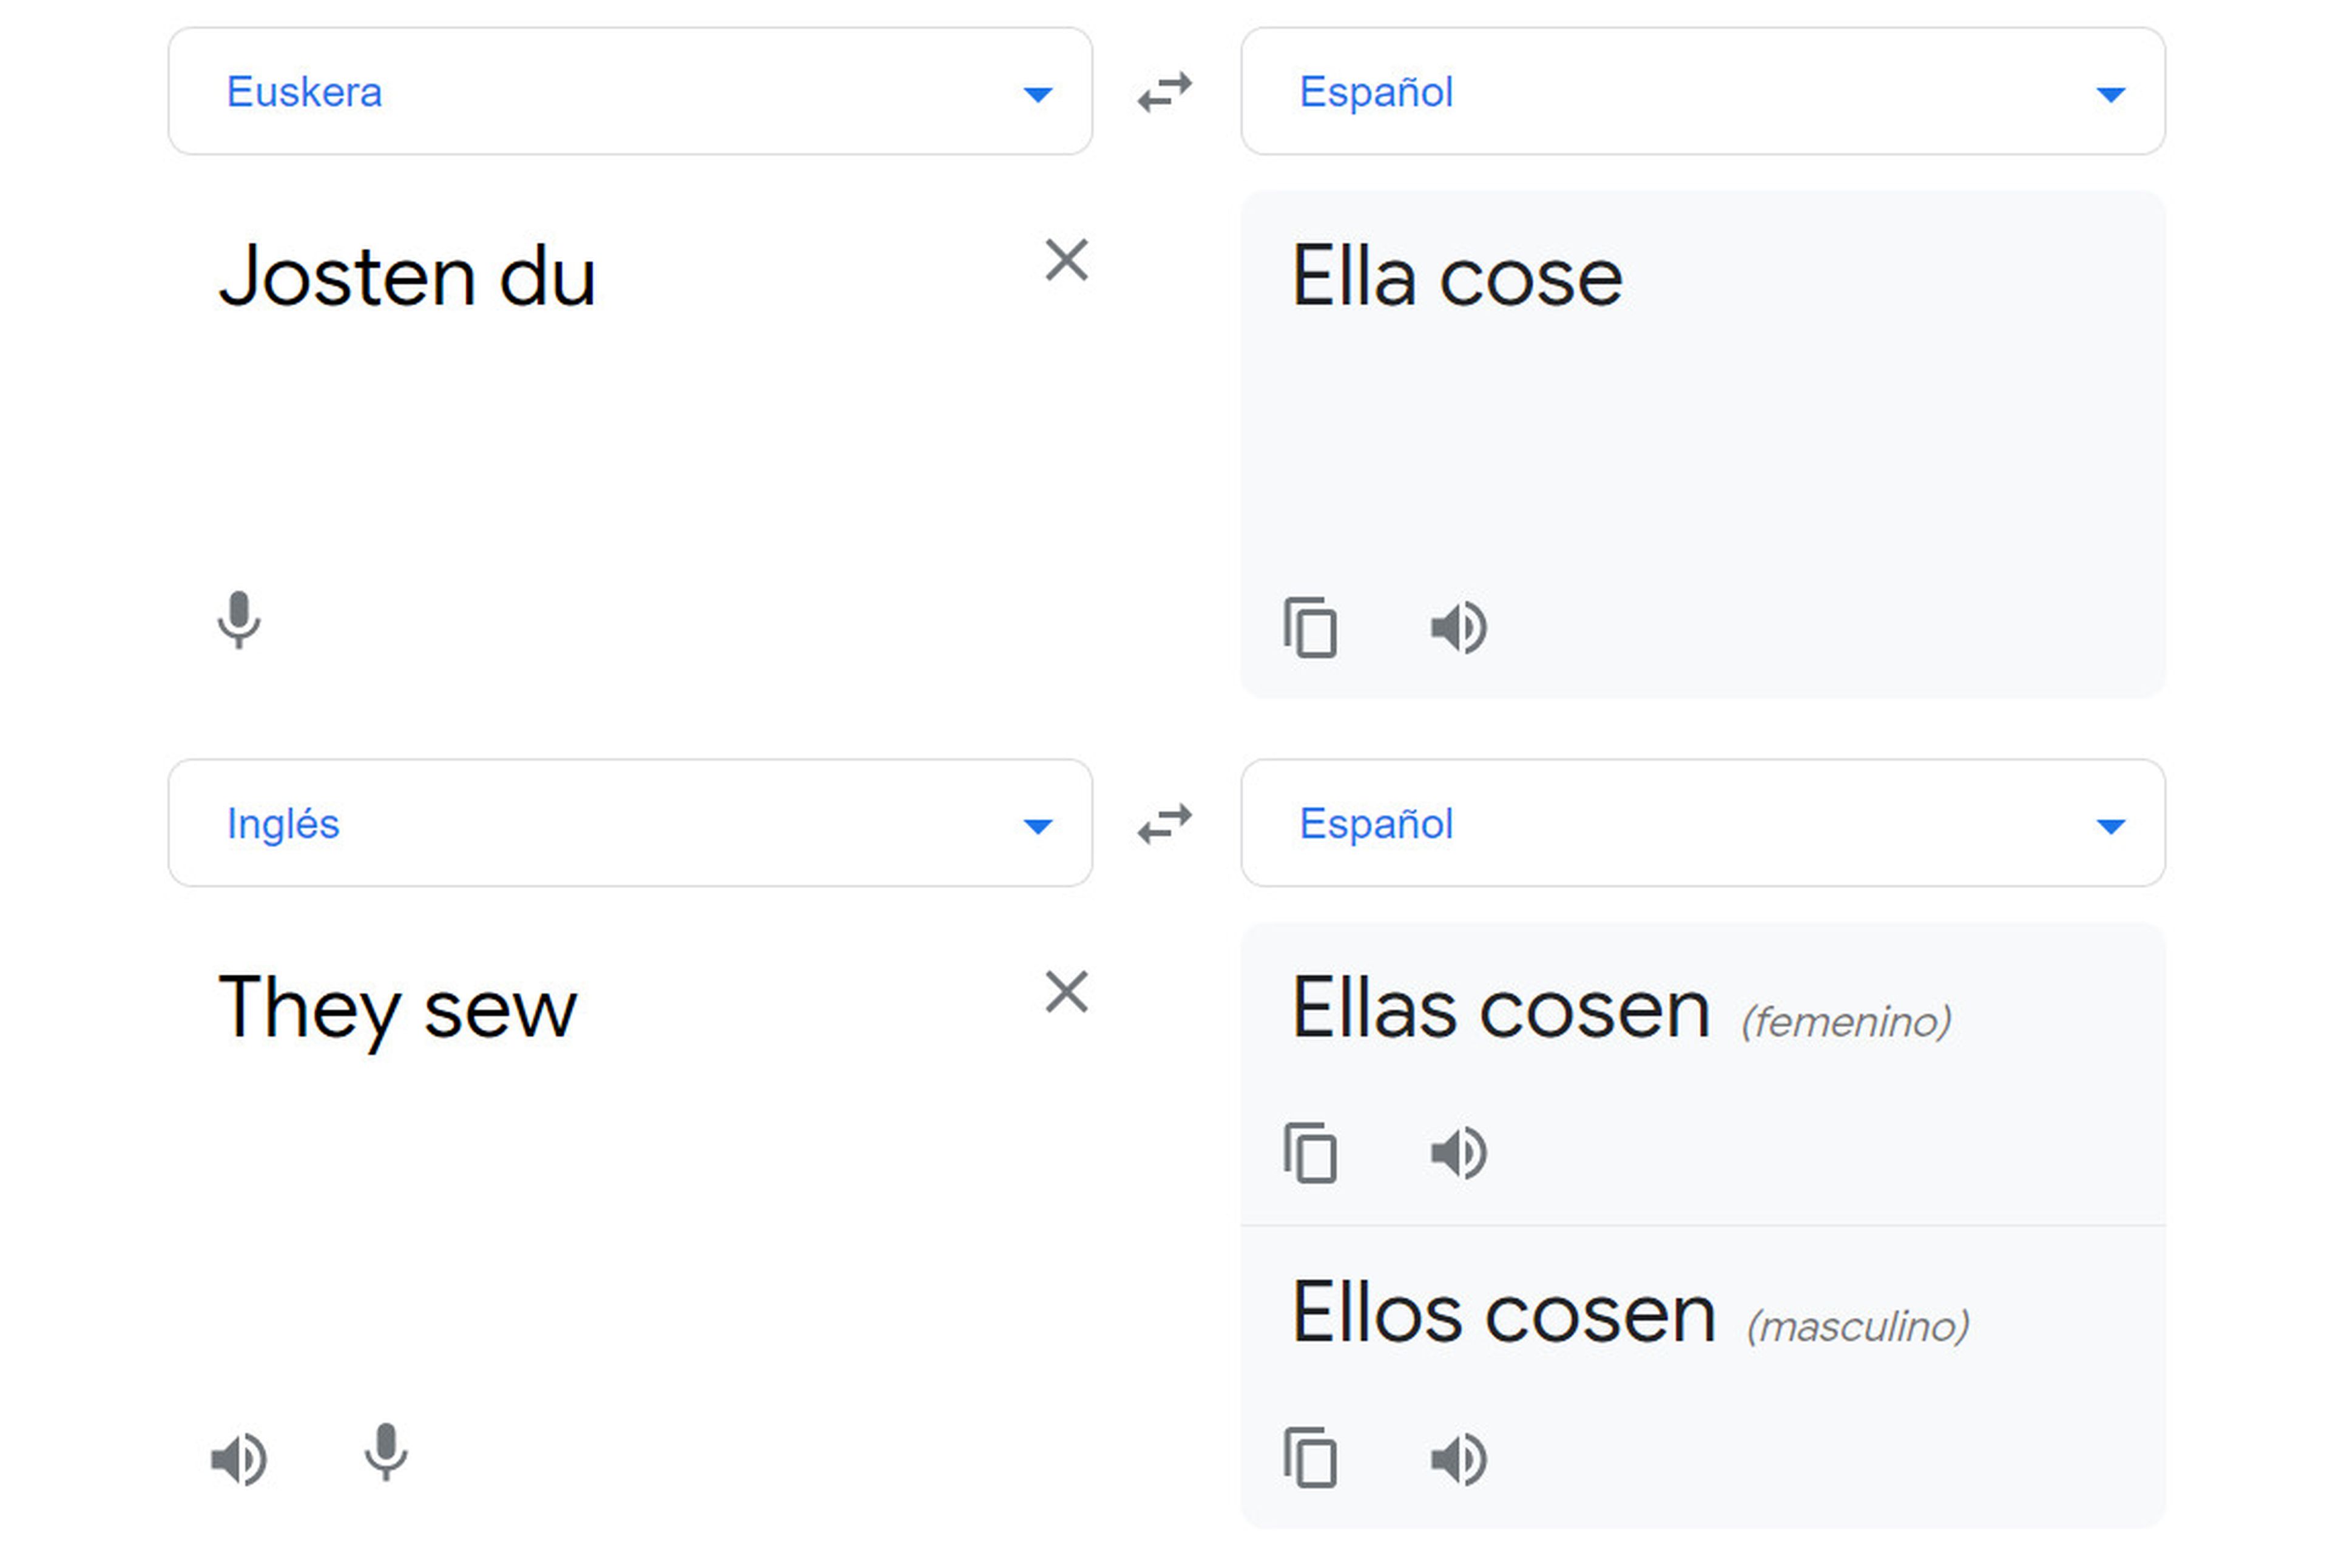 Traductor de Google